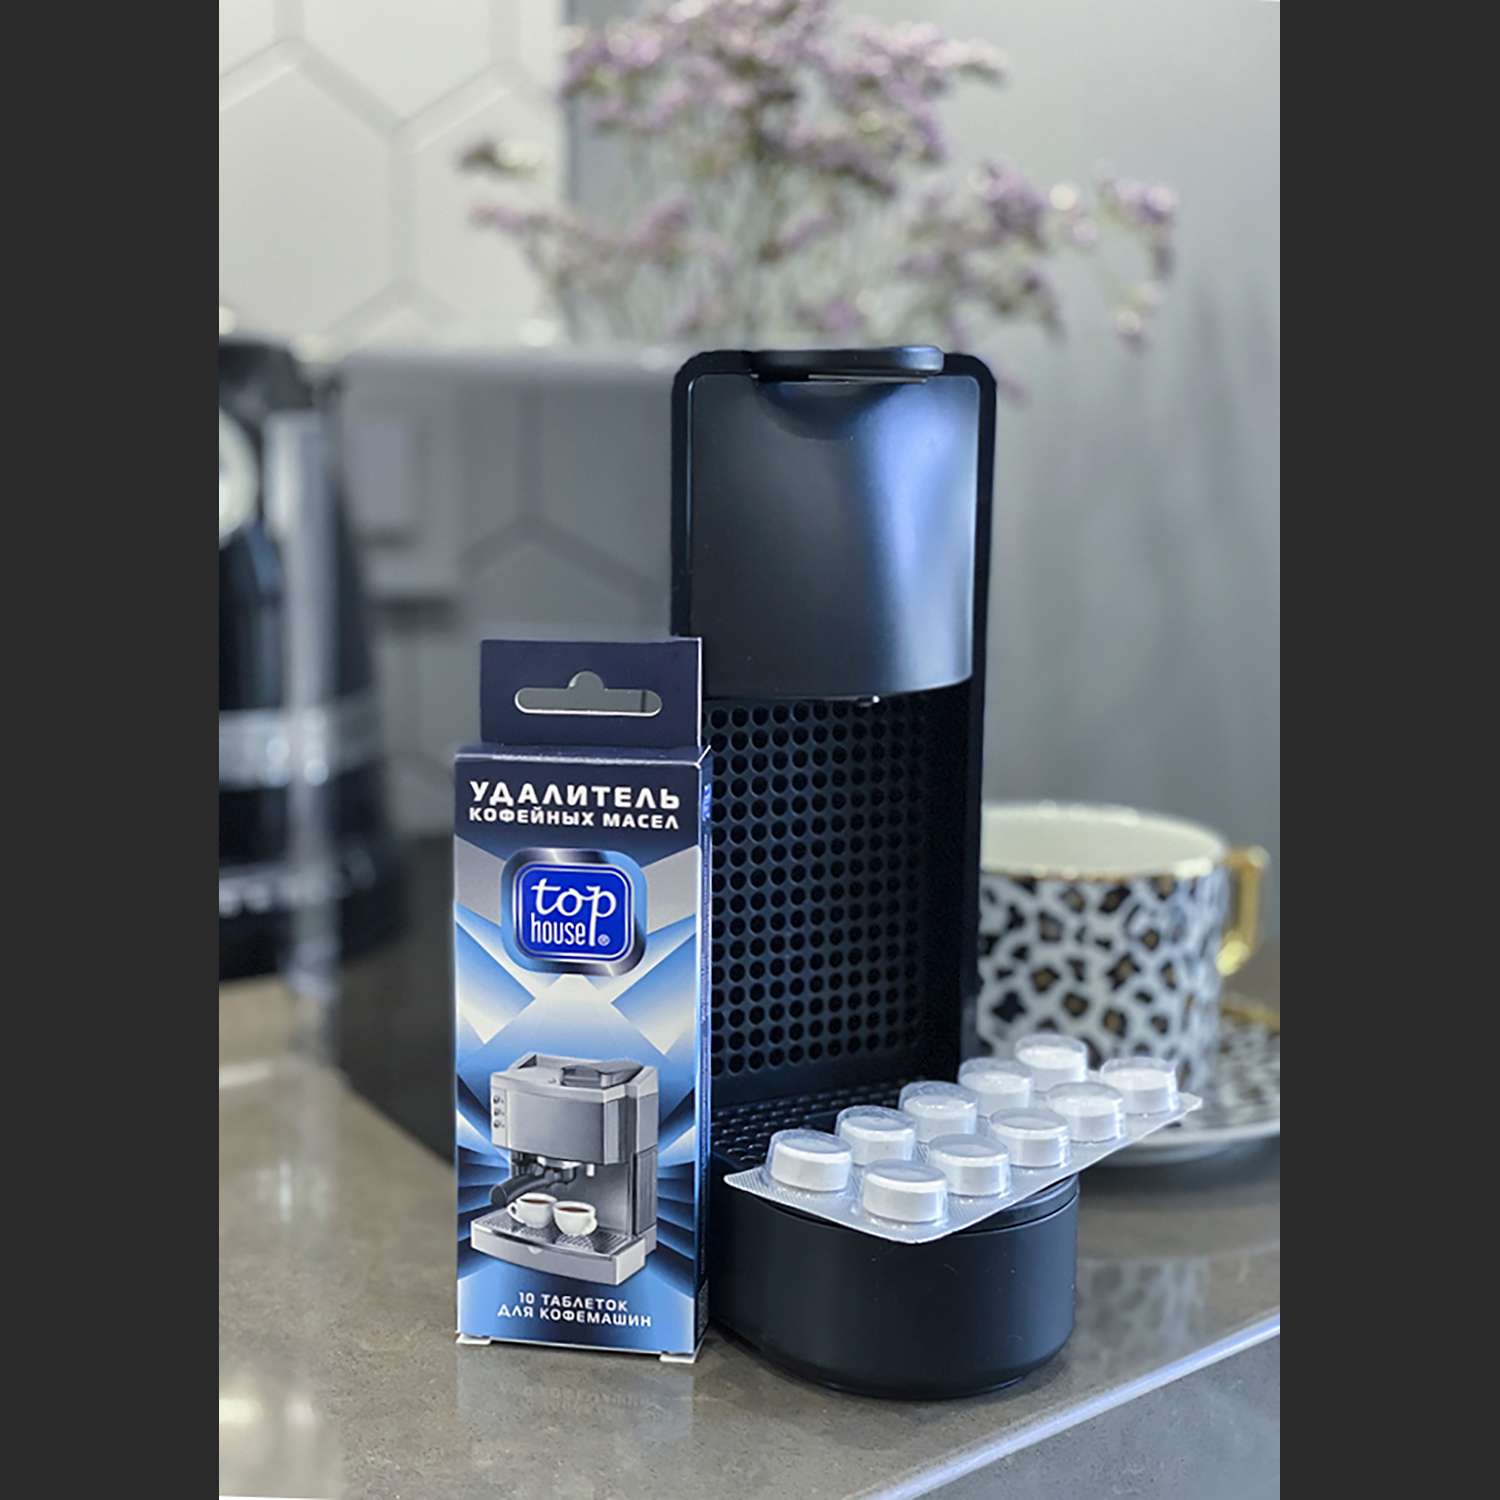 Таблетки Top House для очистки кофемашин / кофейных автоматов / кофеварок 10 шт - фото 5